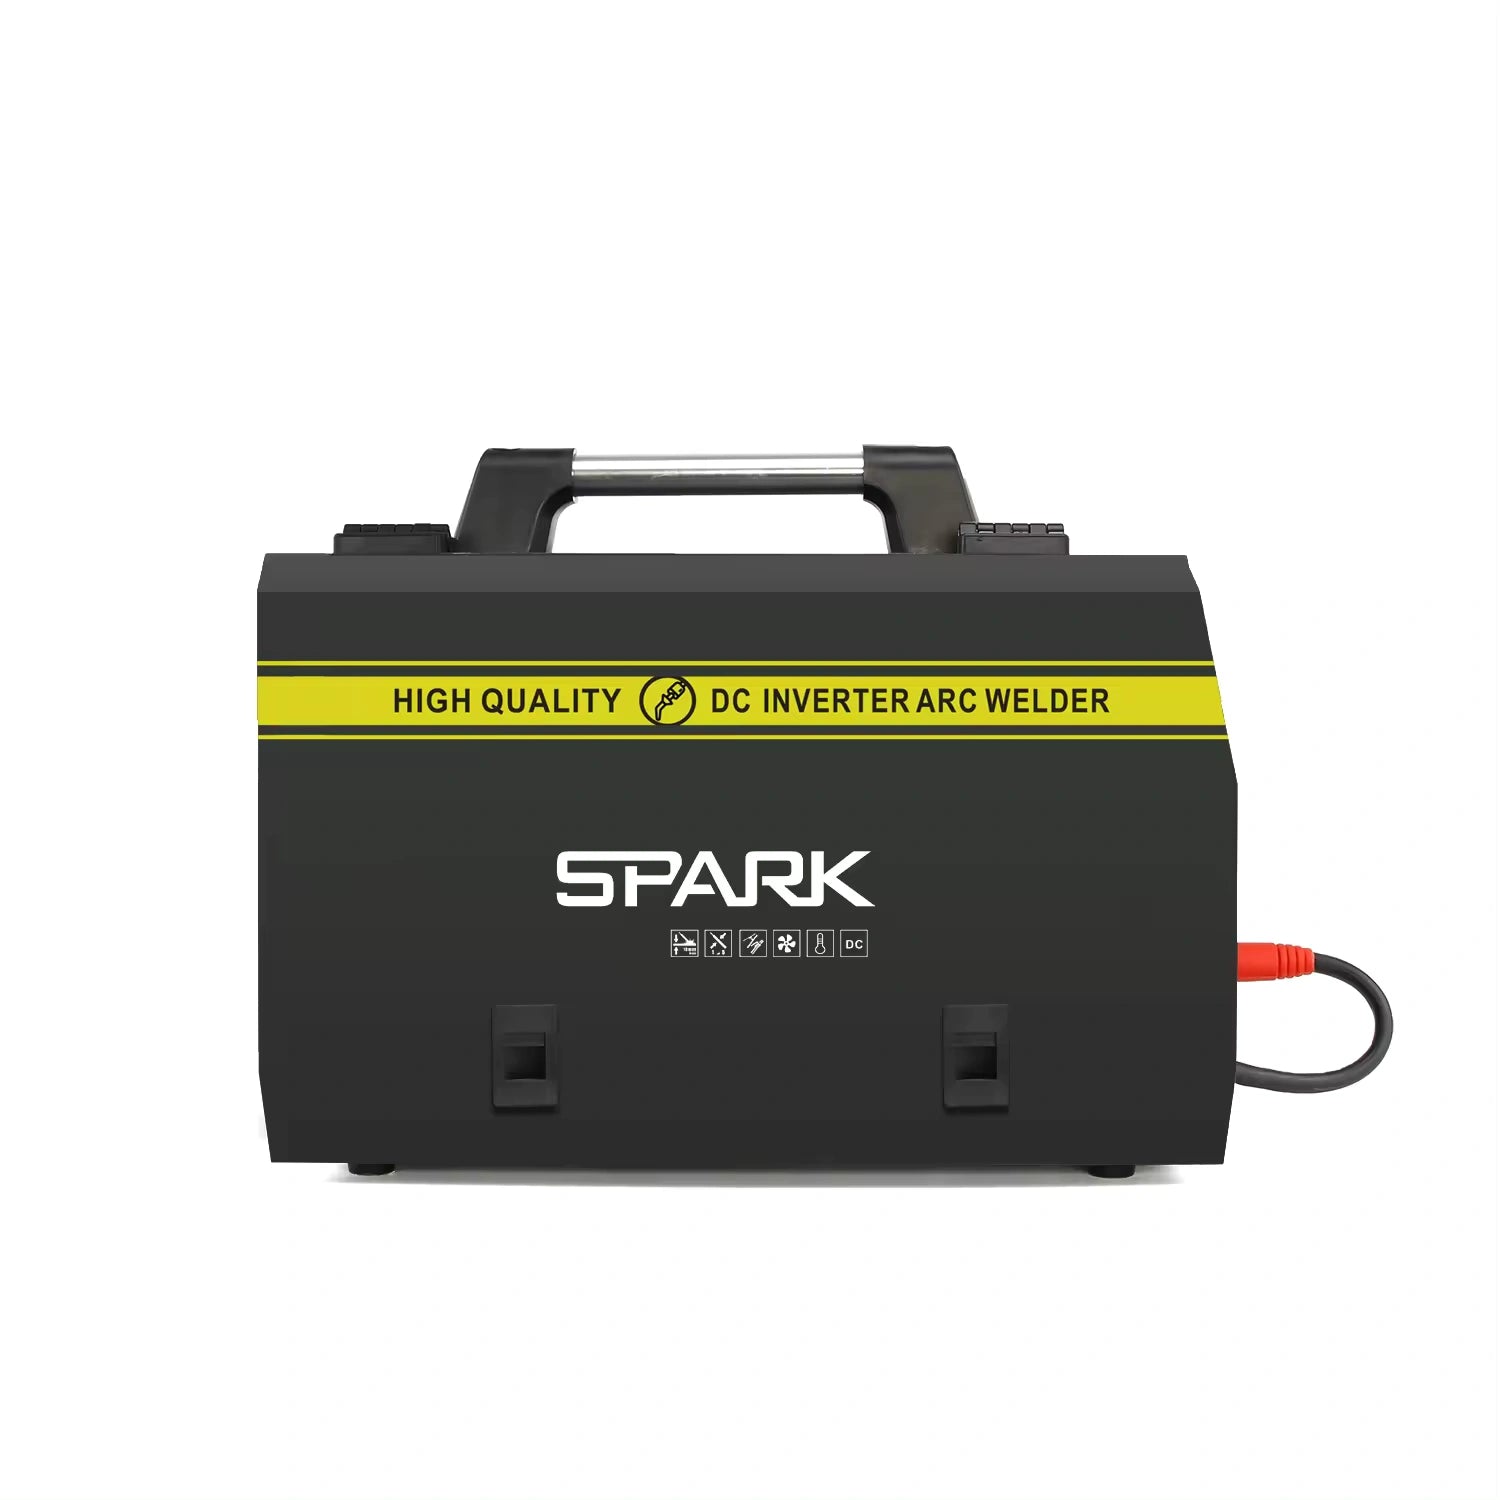 კემპის და შედუღების აპარატი CO2 გაზზე და FLUX მავრთულზე - SPARK MIG-315 Pro C02